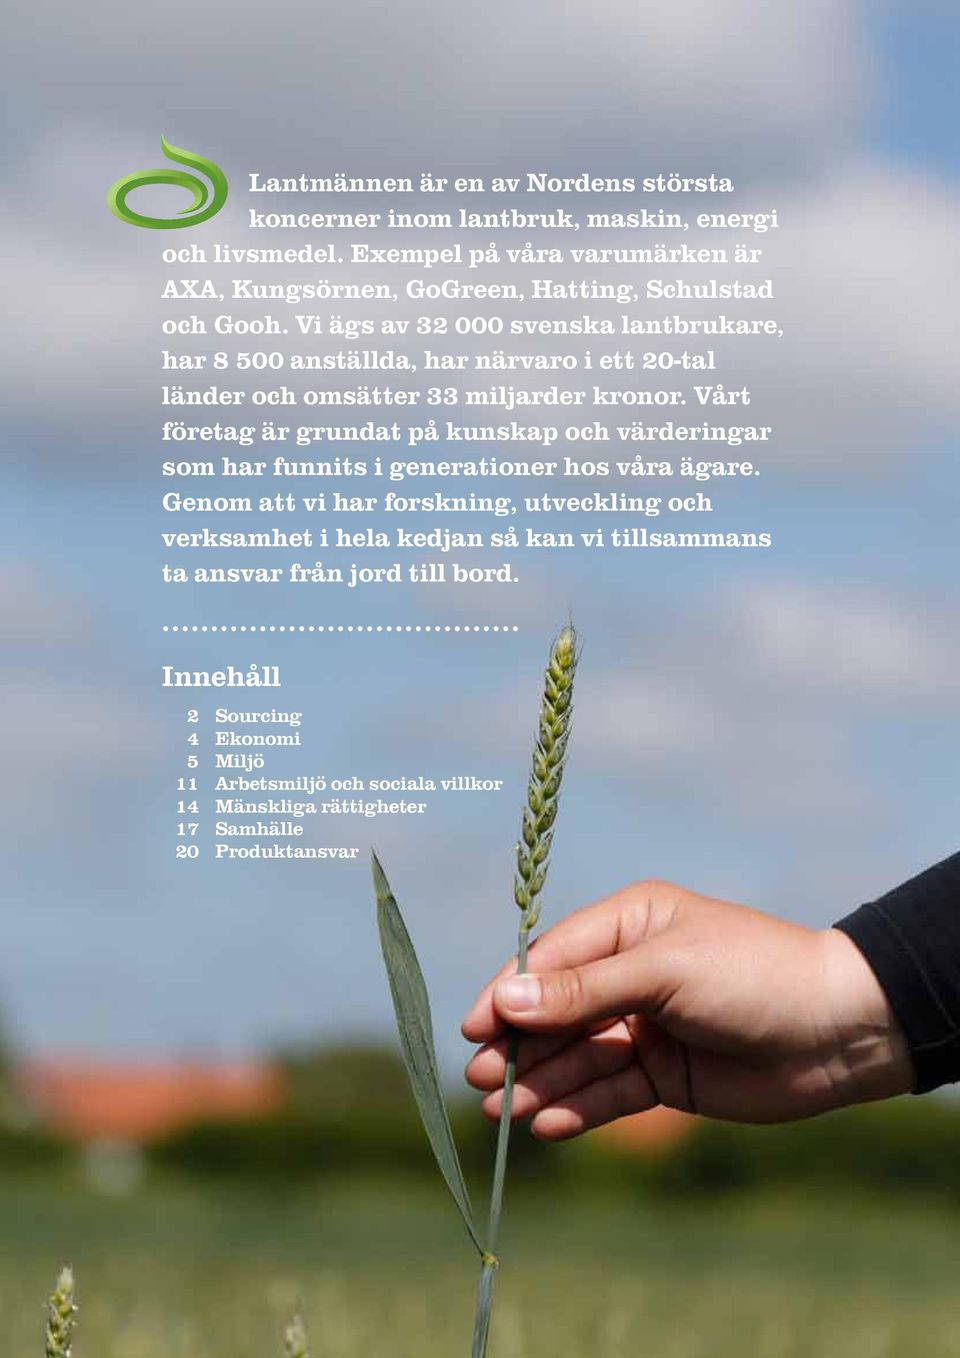 Vi ägs av 32 000 svenska lantbrukare, har 8 500 anställda, har närvaro i ett 20-tal länder och omsätter 33 miljarder kronor.